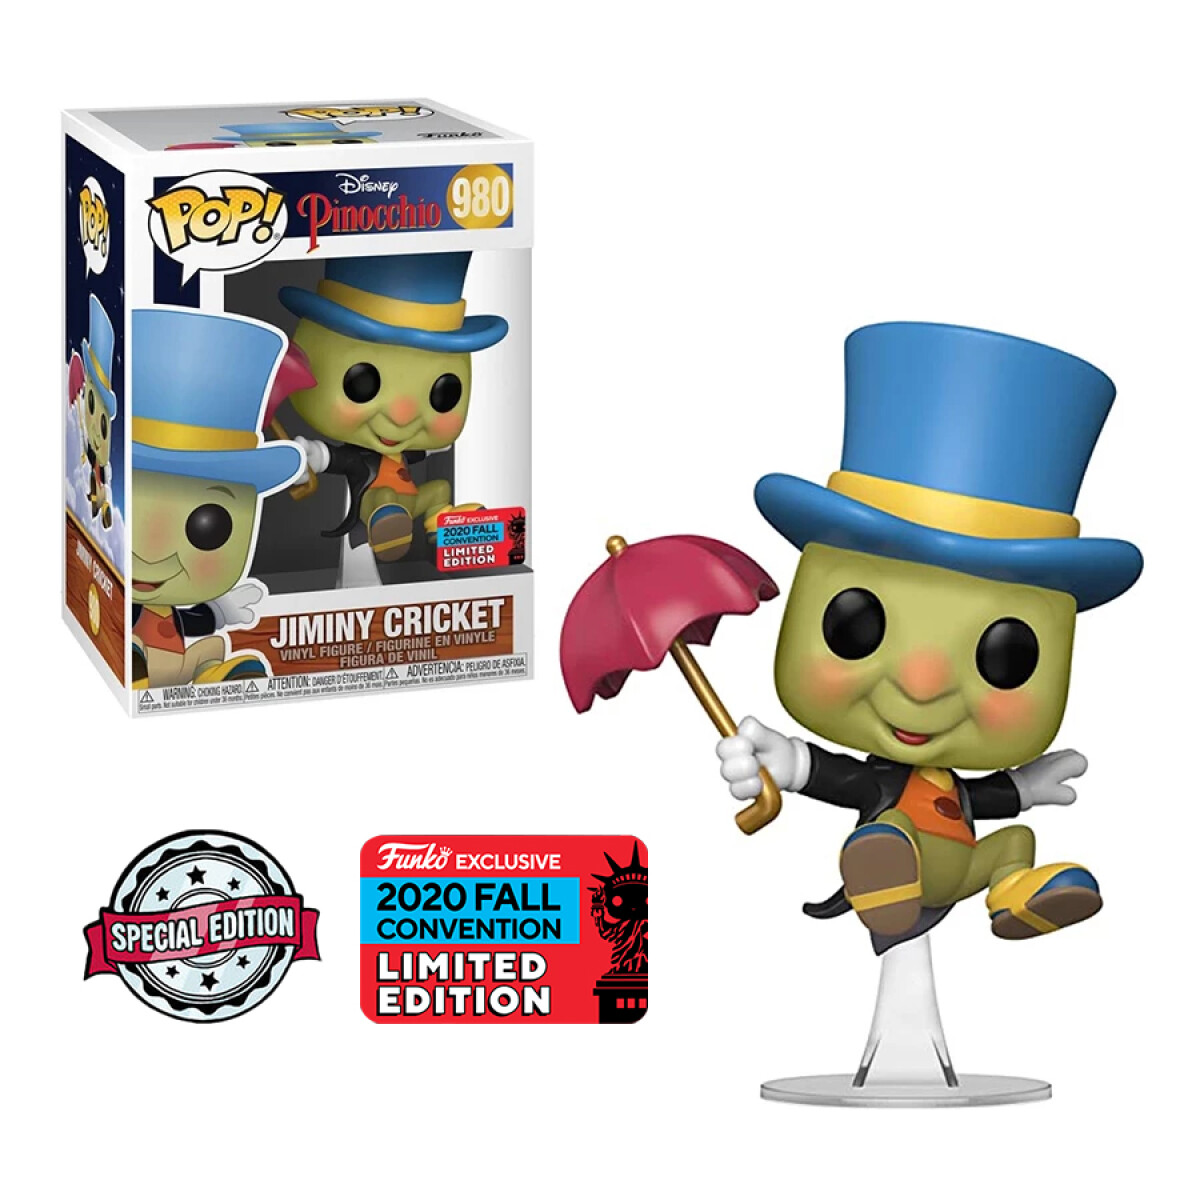 Jiminy Cricket Pinocho [Exclusivo] - 980 